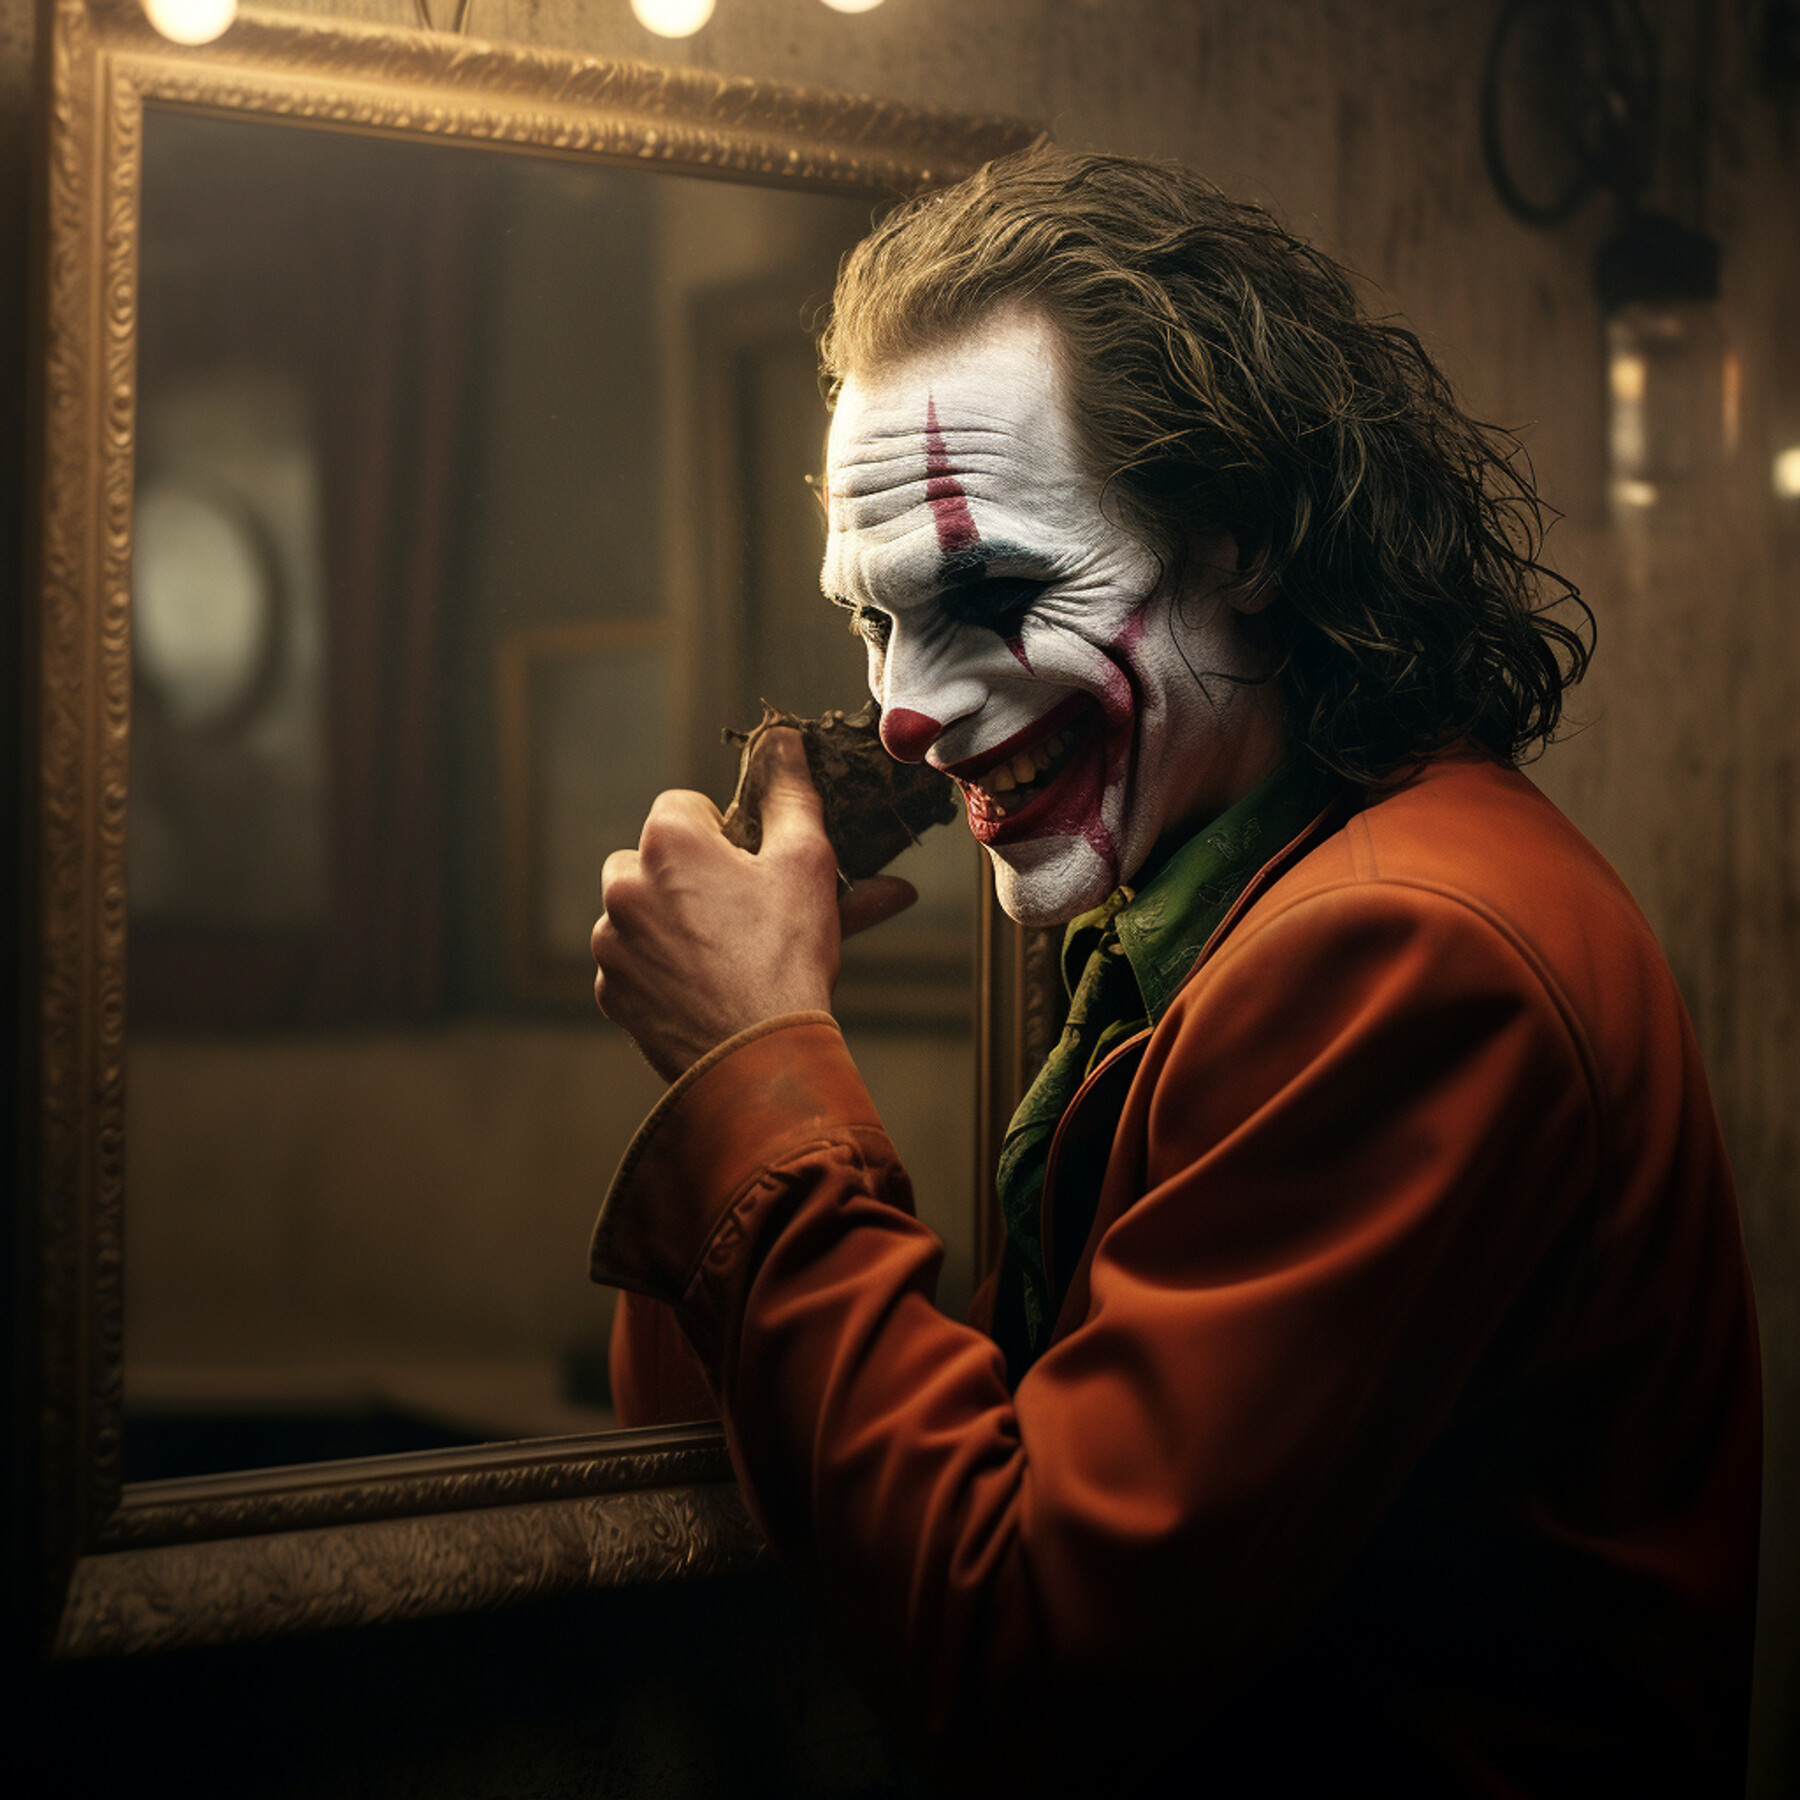 ArtStation - Joker Laughing | Artworks